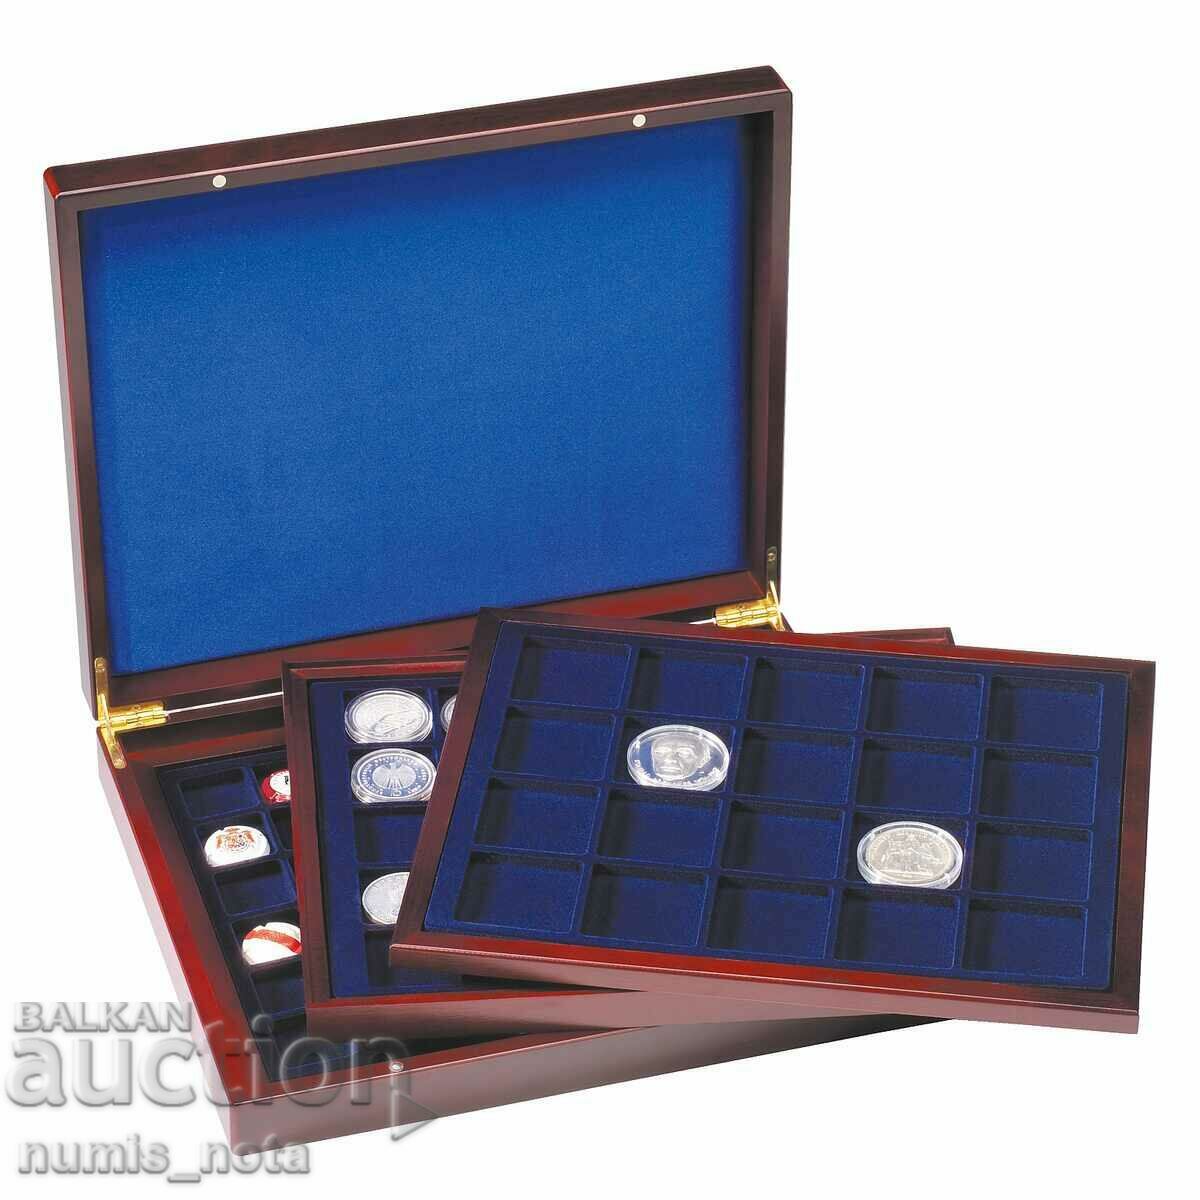 πολυτελές ξύλινο κουτί με 3 δίσκους νομισμάτων - διαφορετικά μεγέθη